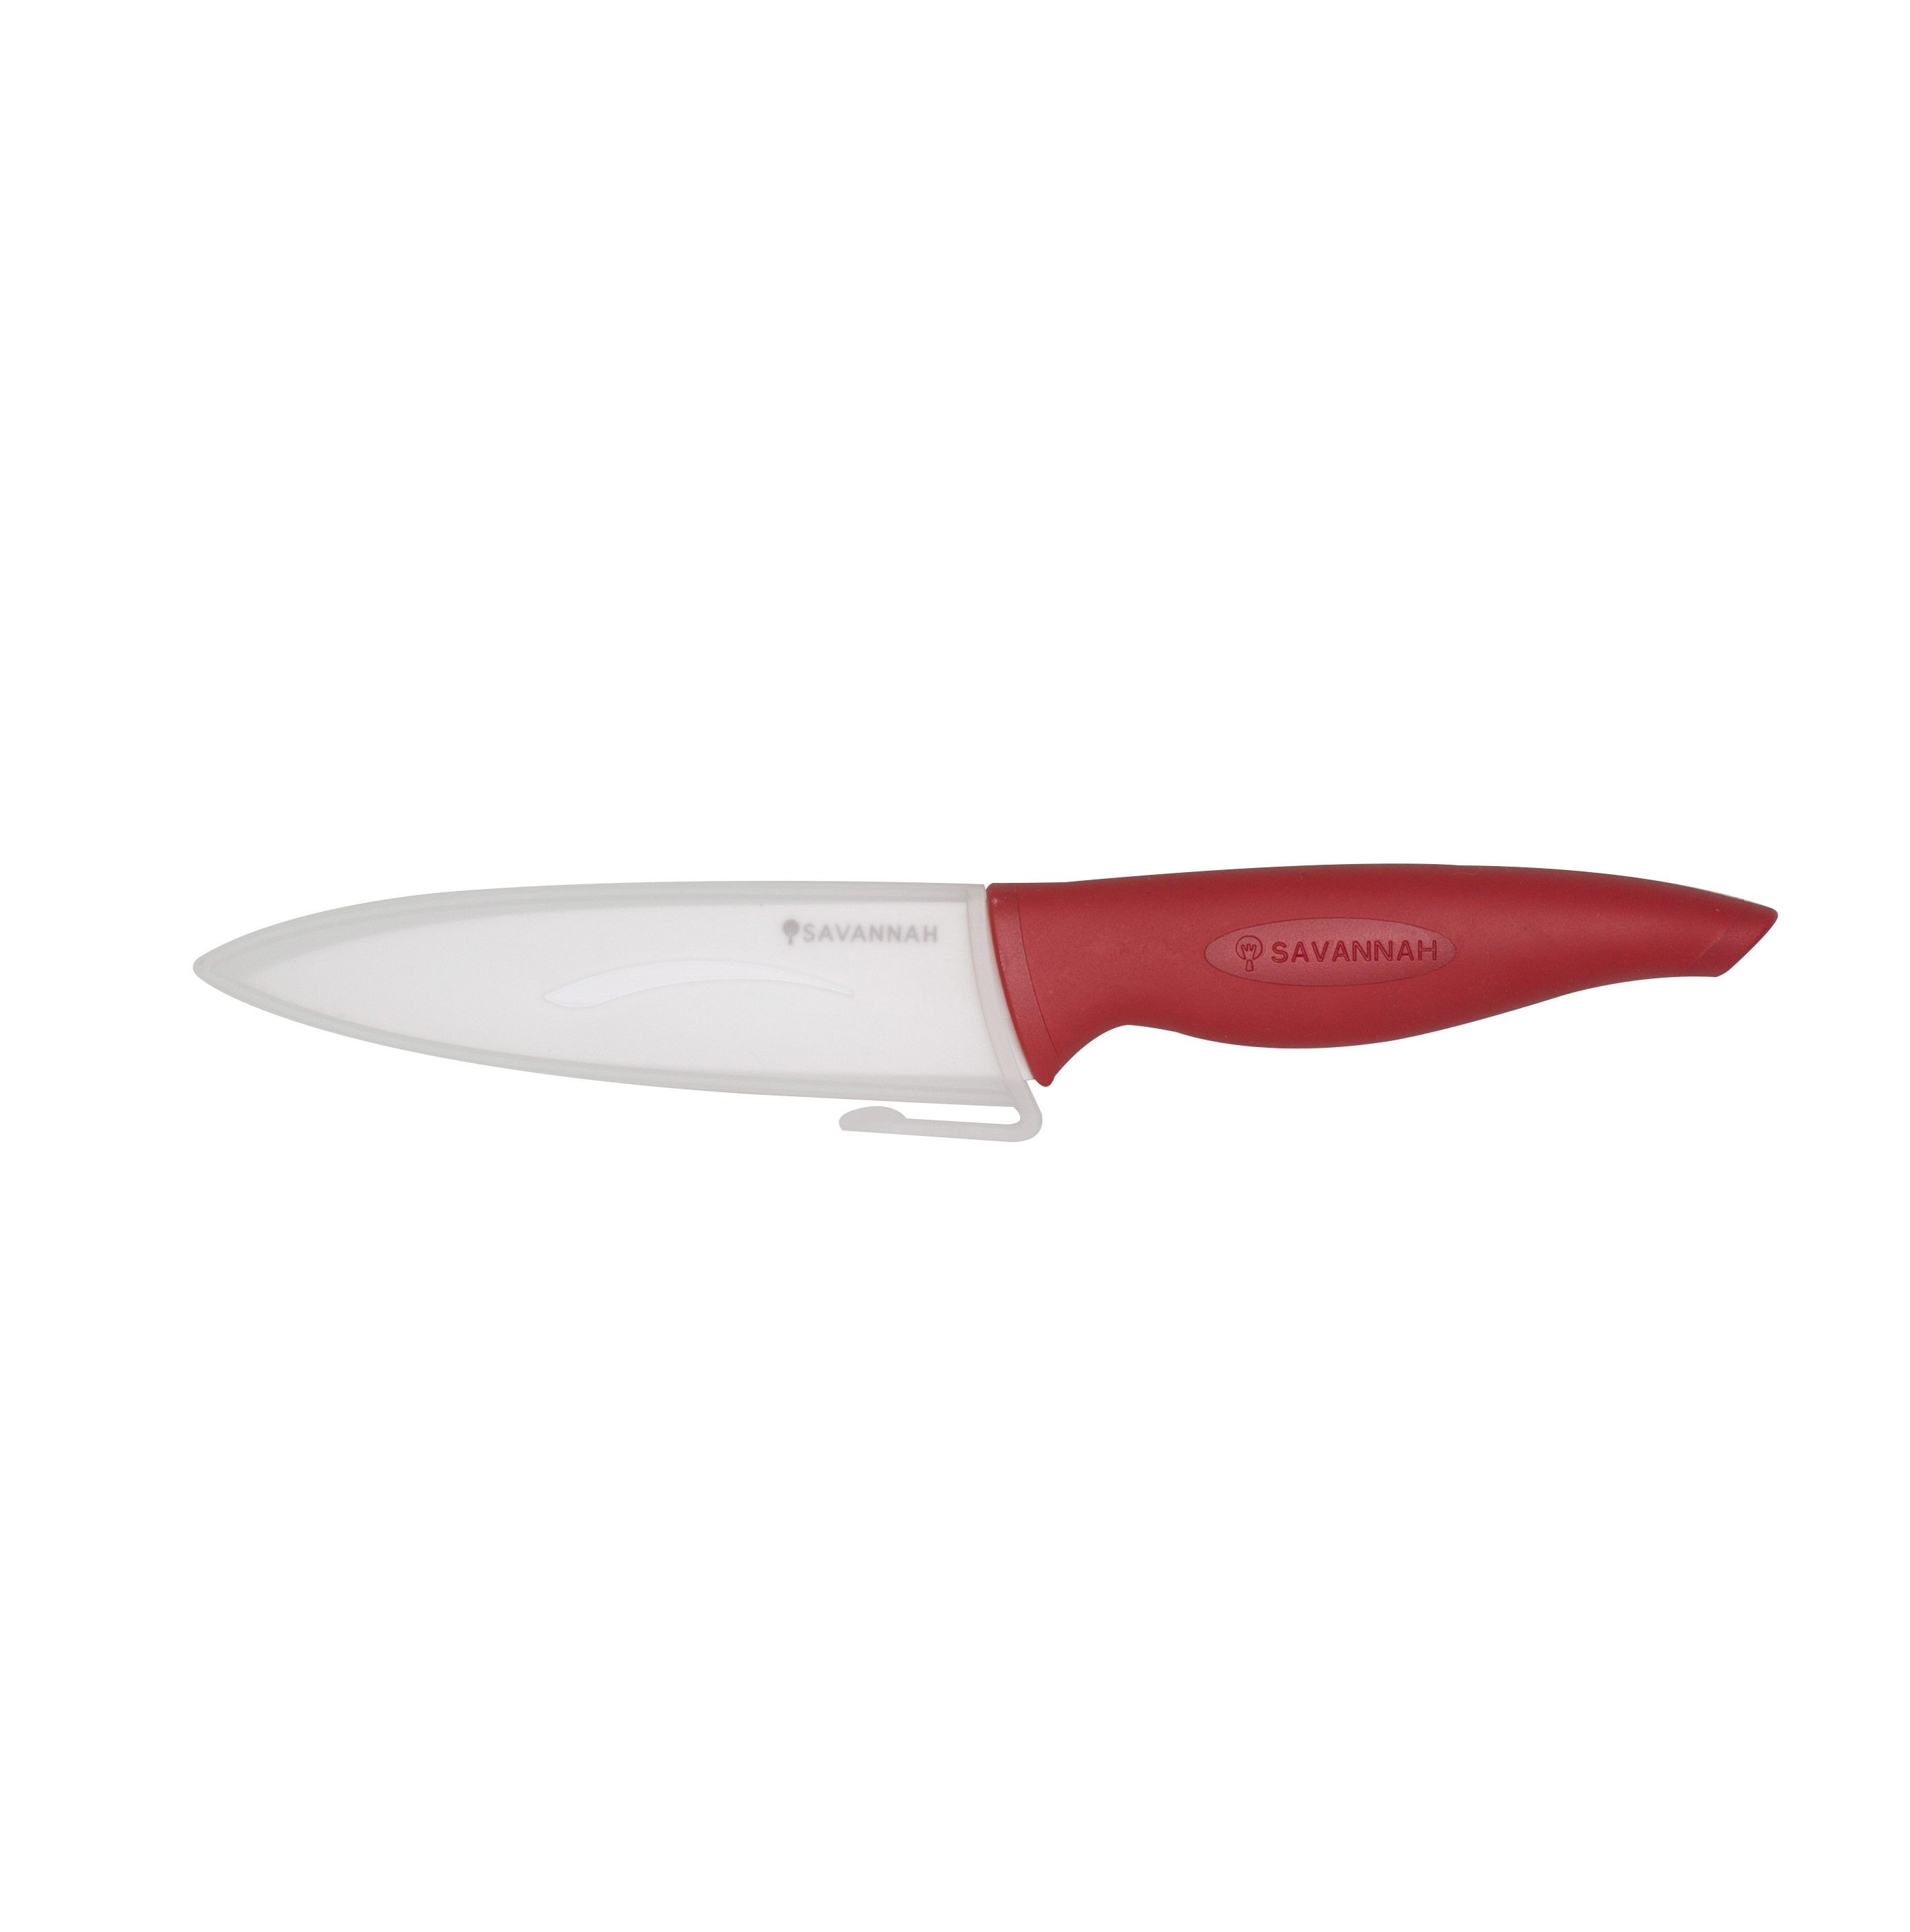 Savannah Ceramic Prep Knife & Sheath White Red 13cm Blade 25x4x2cm